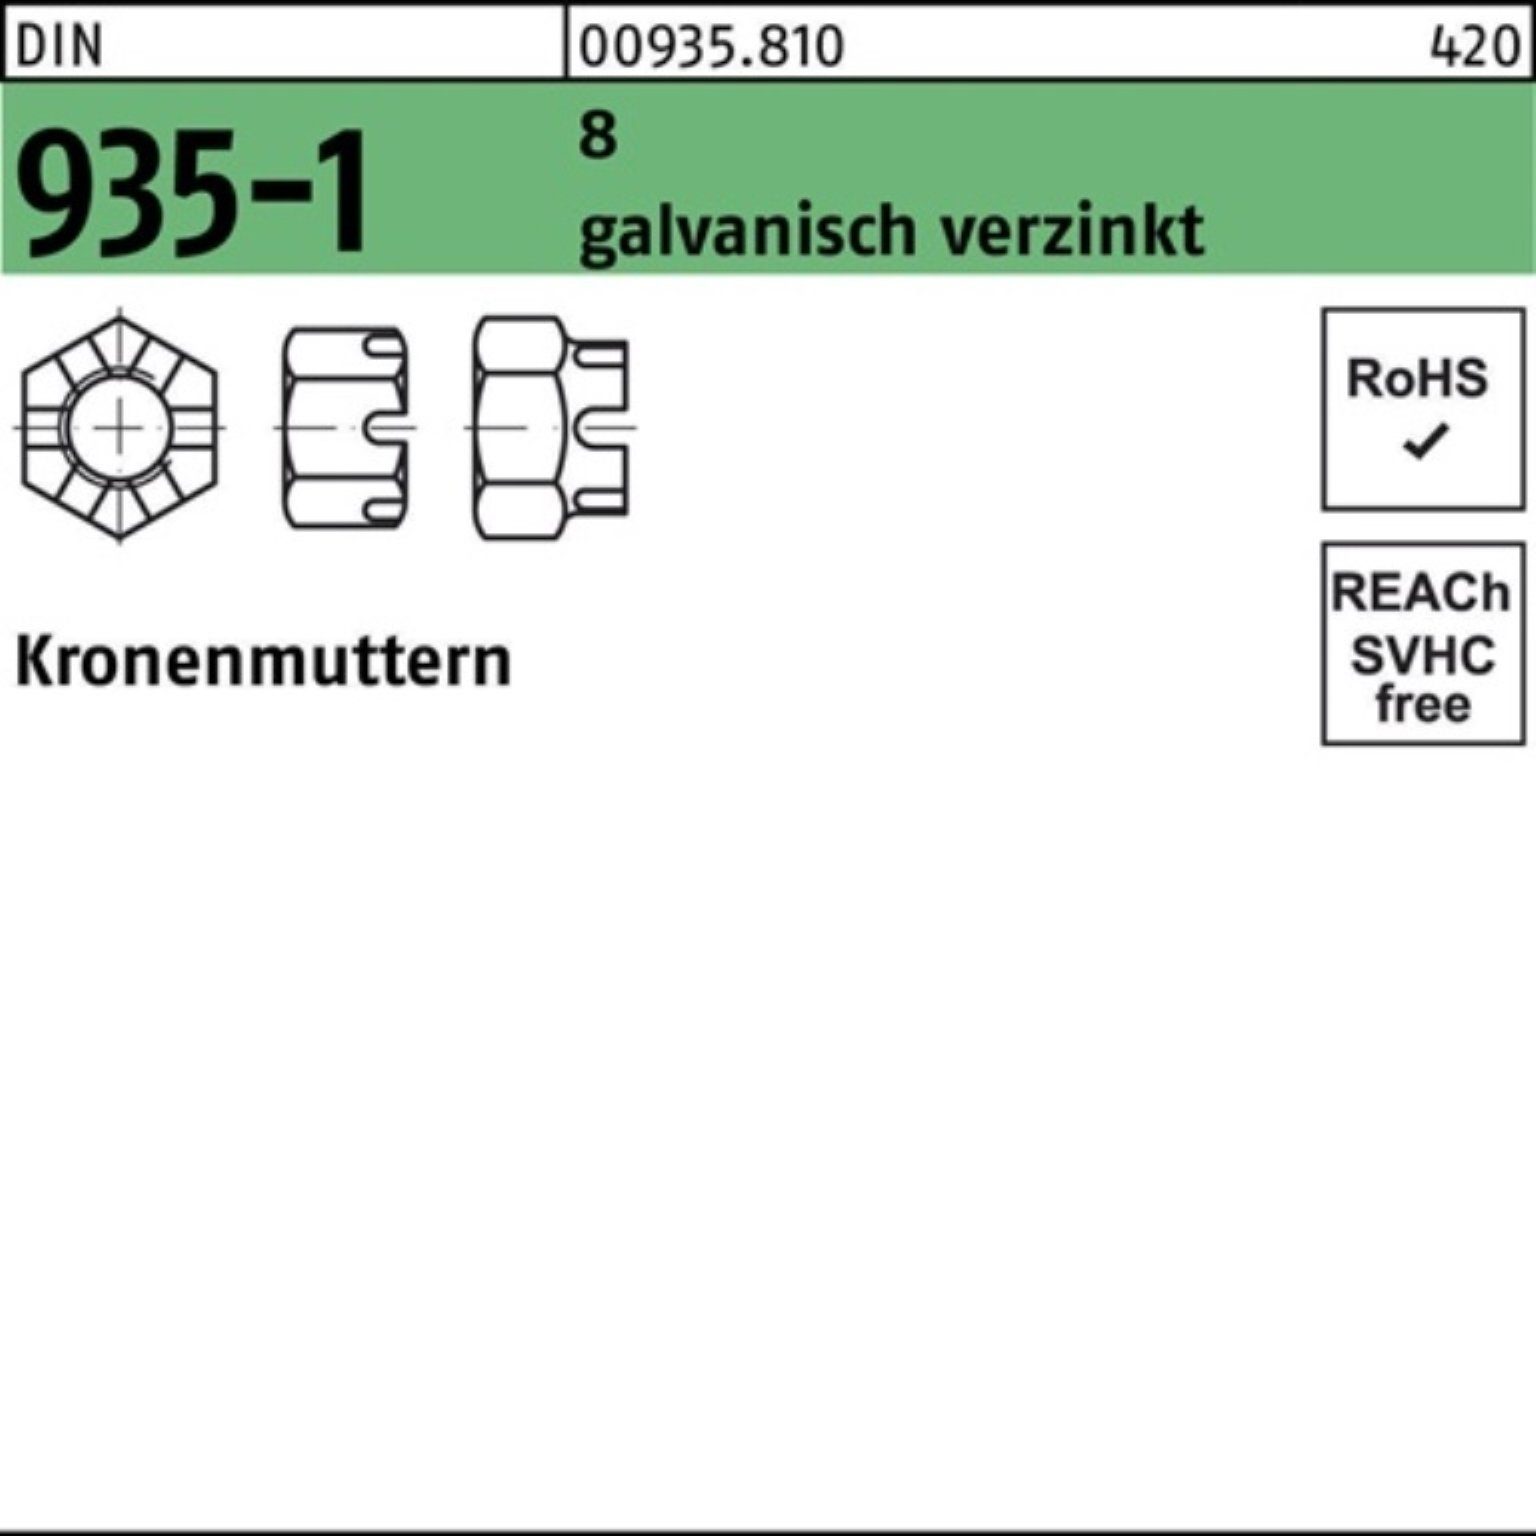 Reyher Kronenmutter 100er Pack Kronenmutter DIN 935-1 M8 8 galv.verz. 100 Stück DIN 935-1